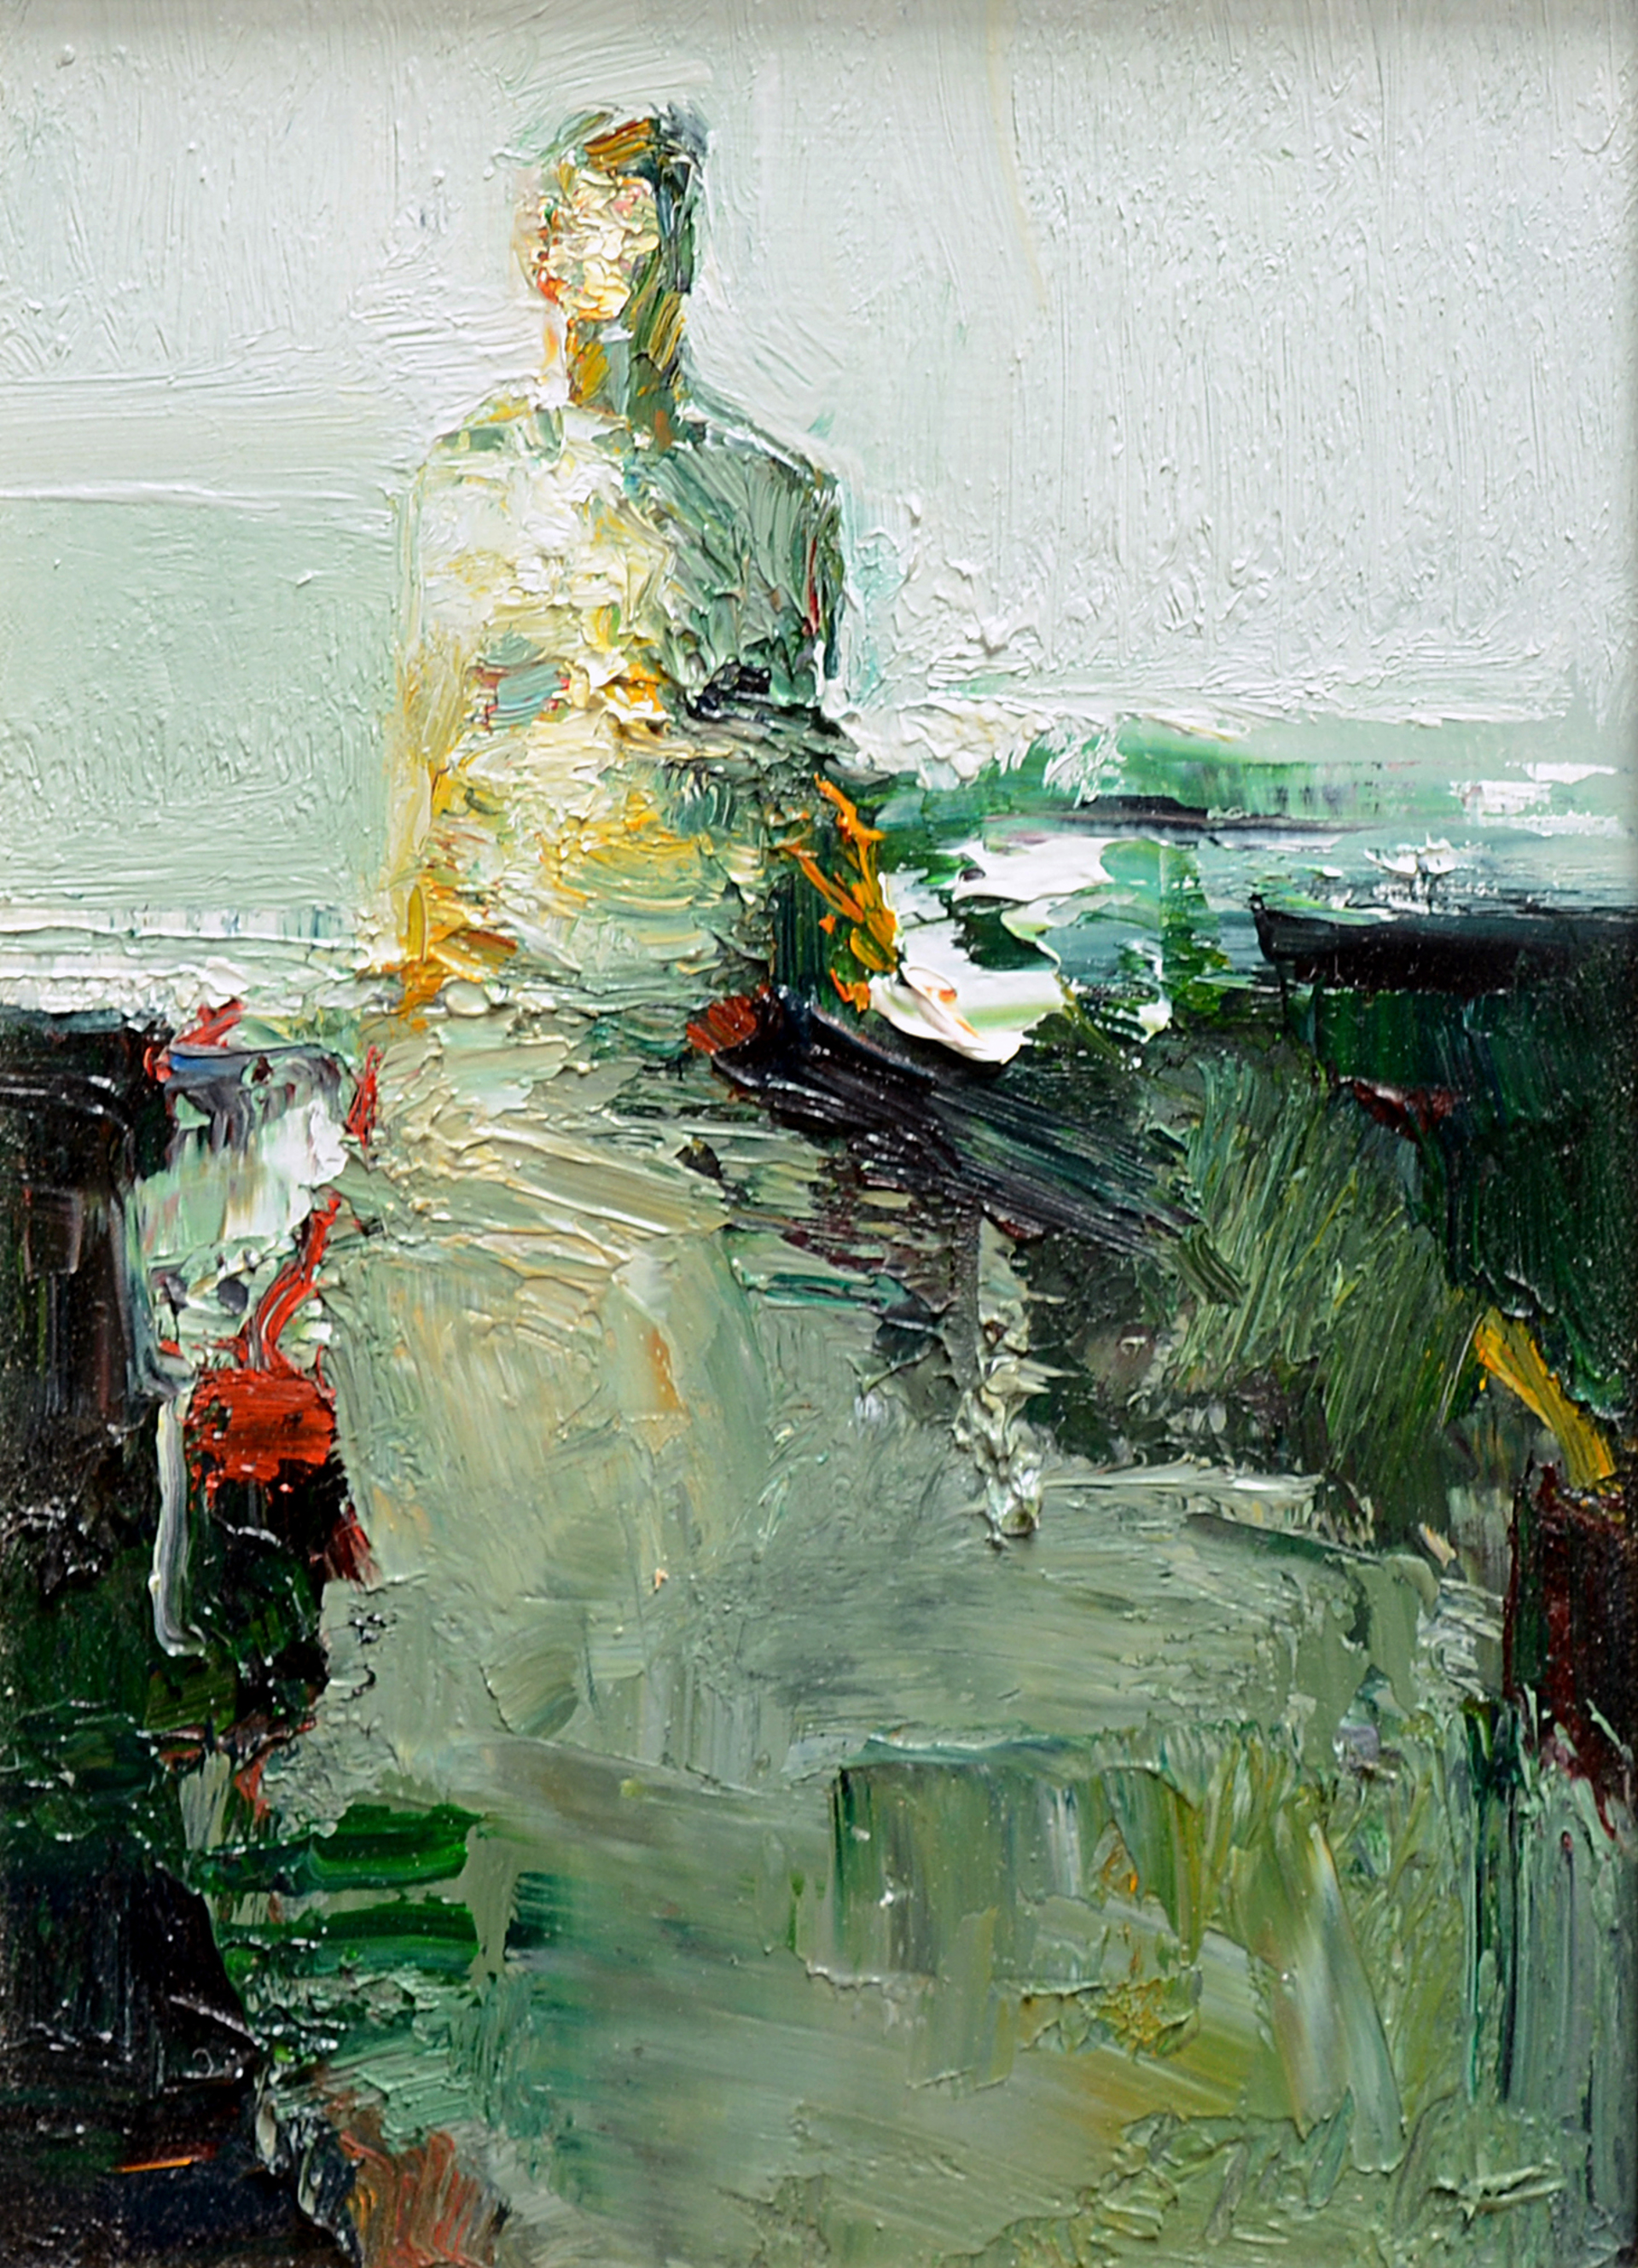 Woman in Dress by Danny McCaw